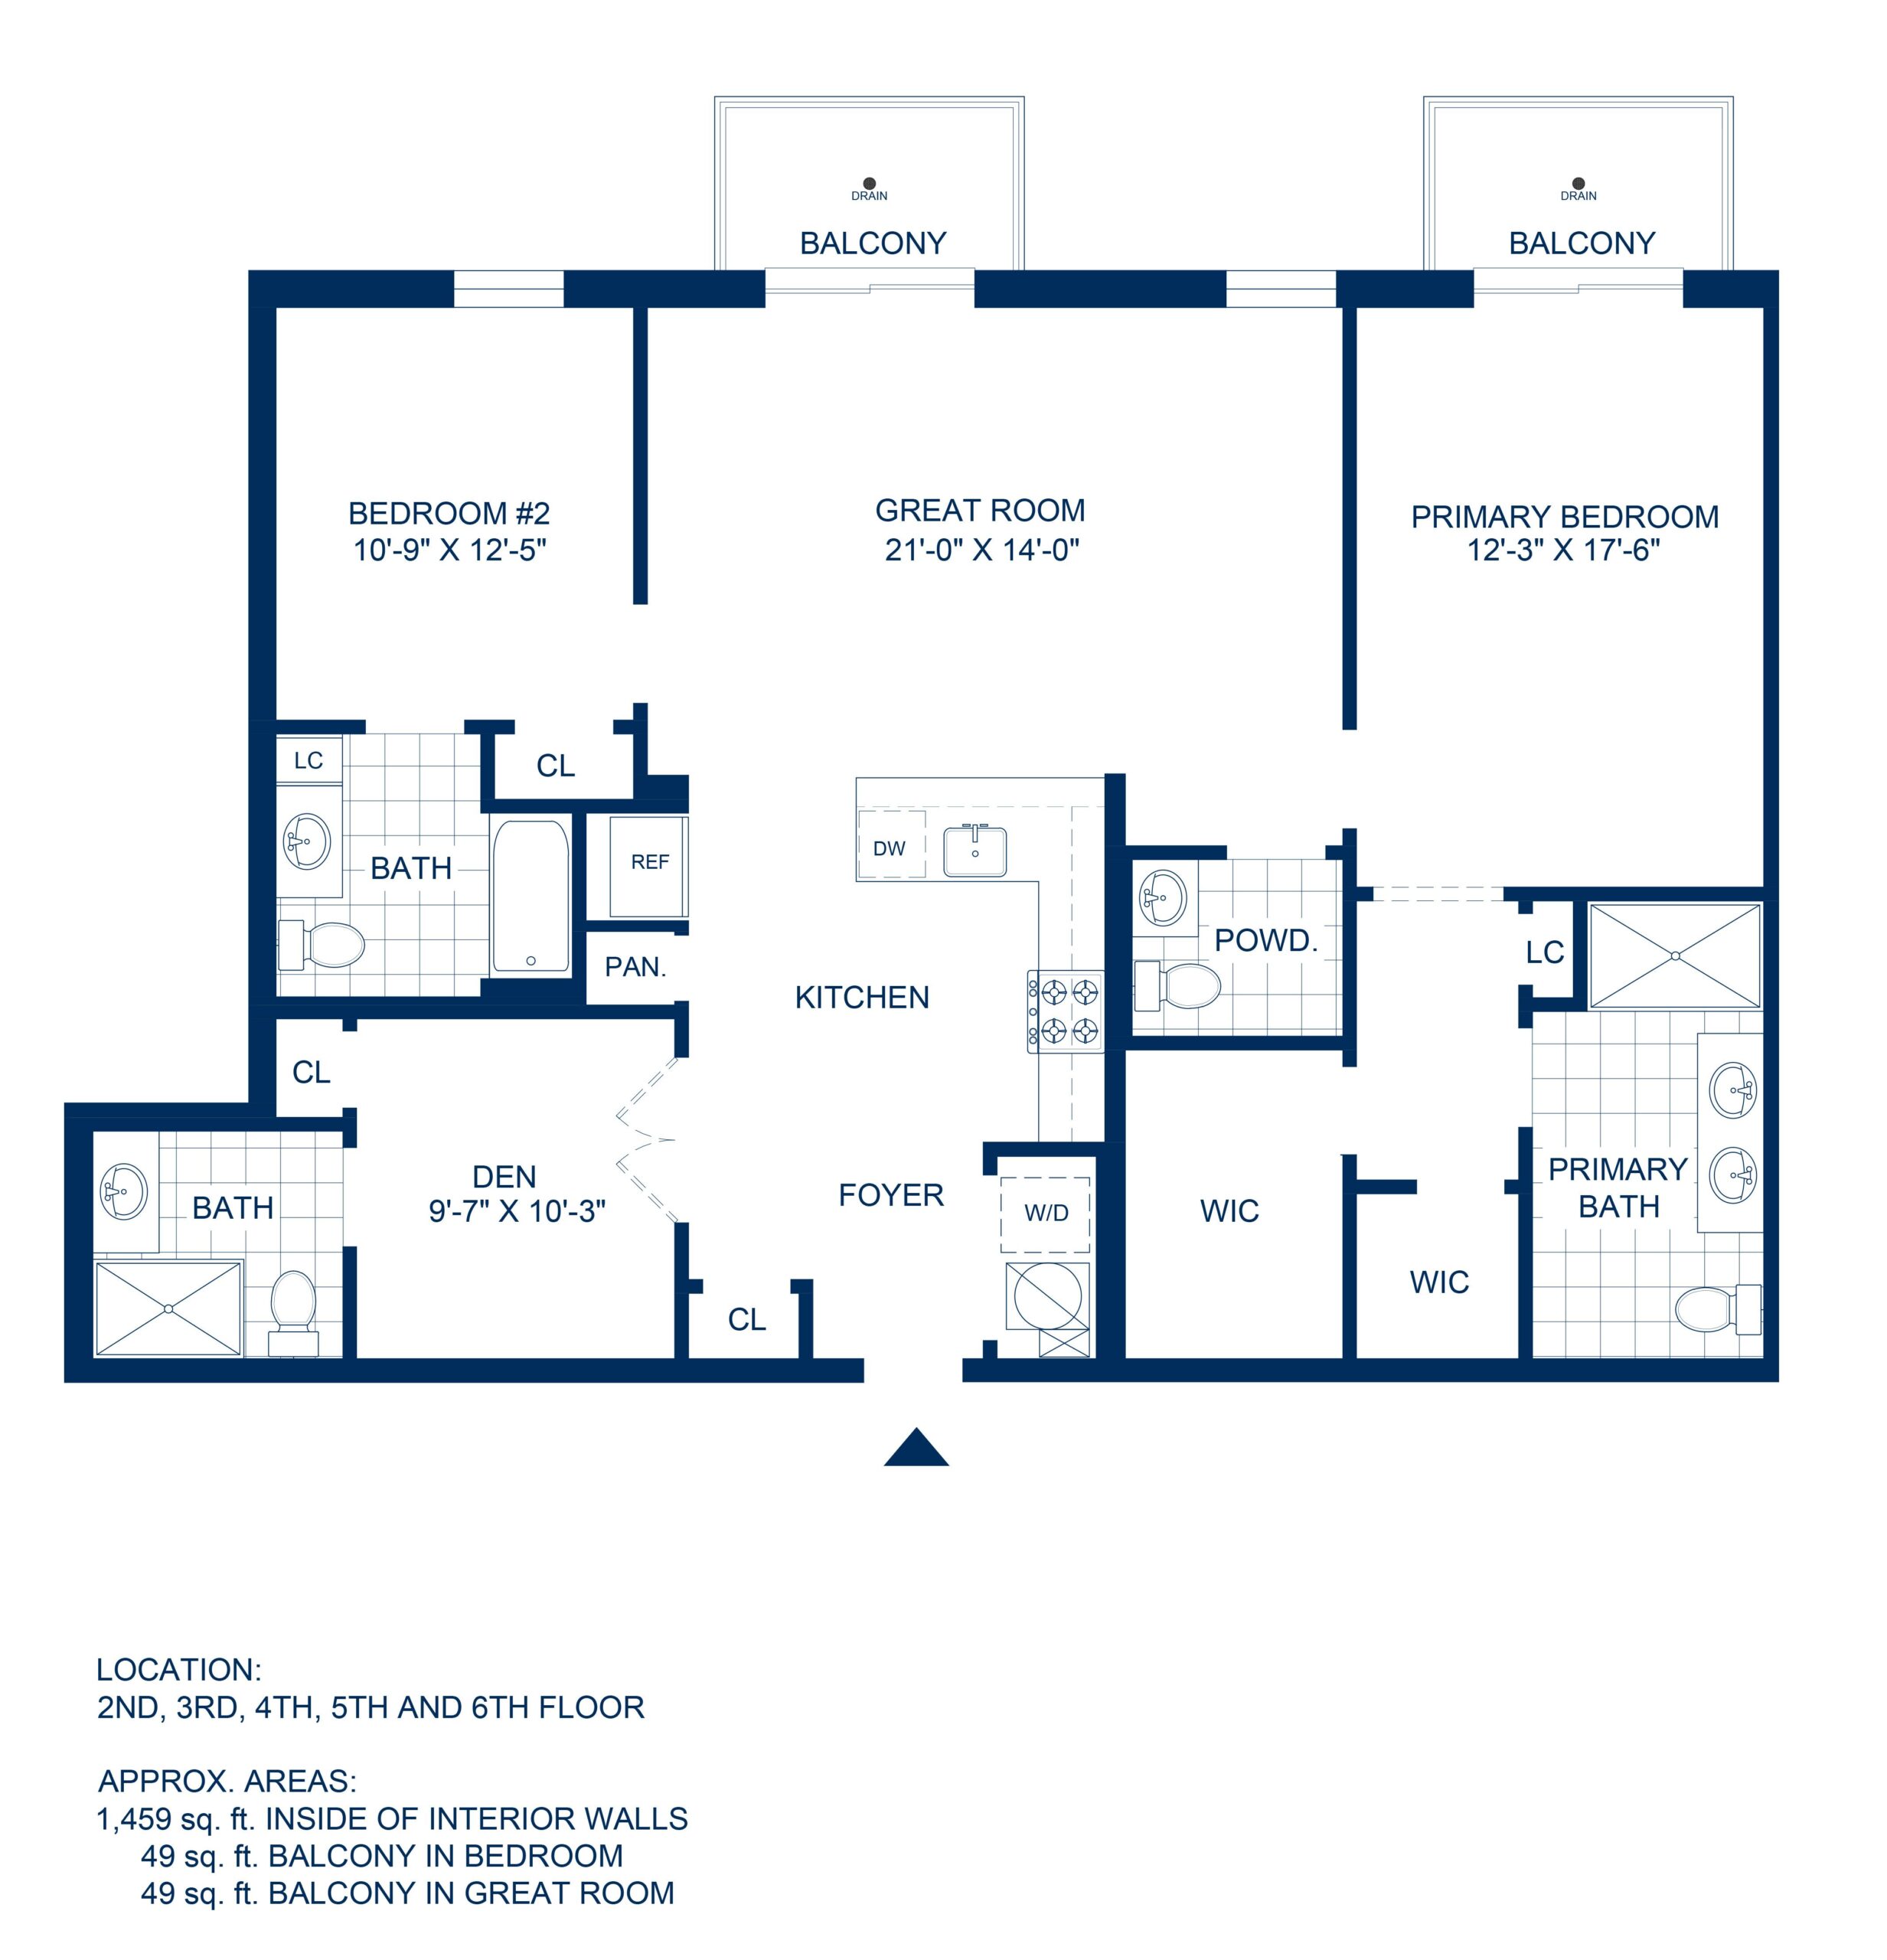 Adelphi Residences Floor Plan - 2 Bedroom - View 1